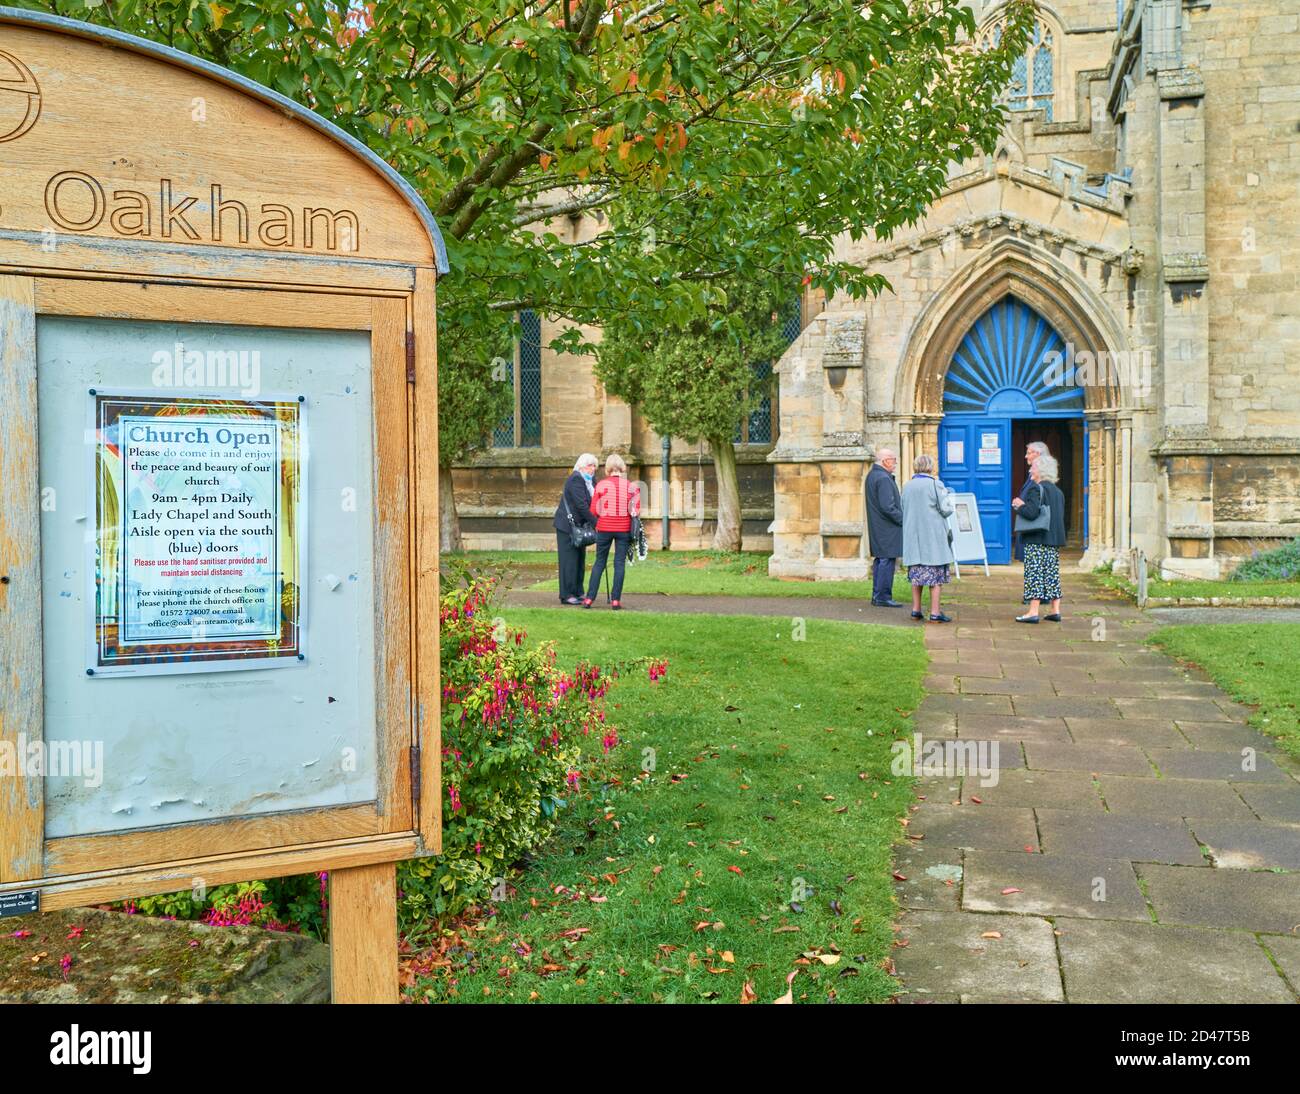 I lutto attendono fuori dalla chiesa parrocchiale di All Saints a Oakham, Rutland, Inghilterra, per un servizio funebre durante l'epidemia di coronavirus, ottobre 2020. Foto Stock